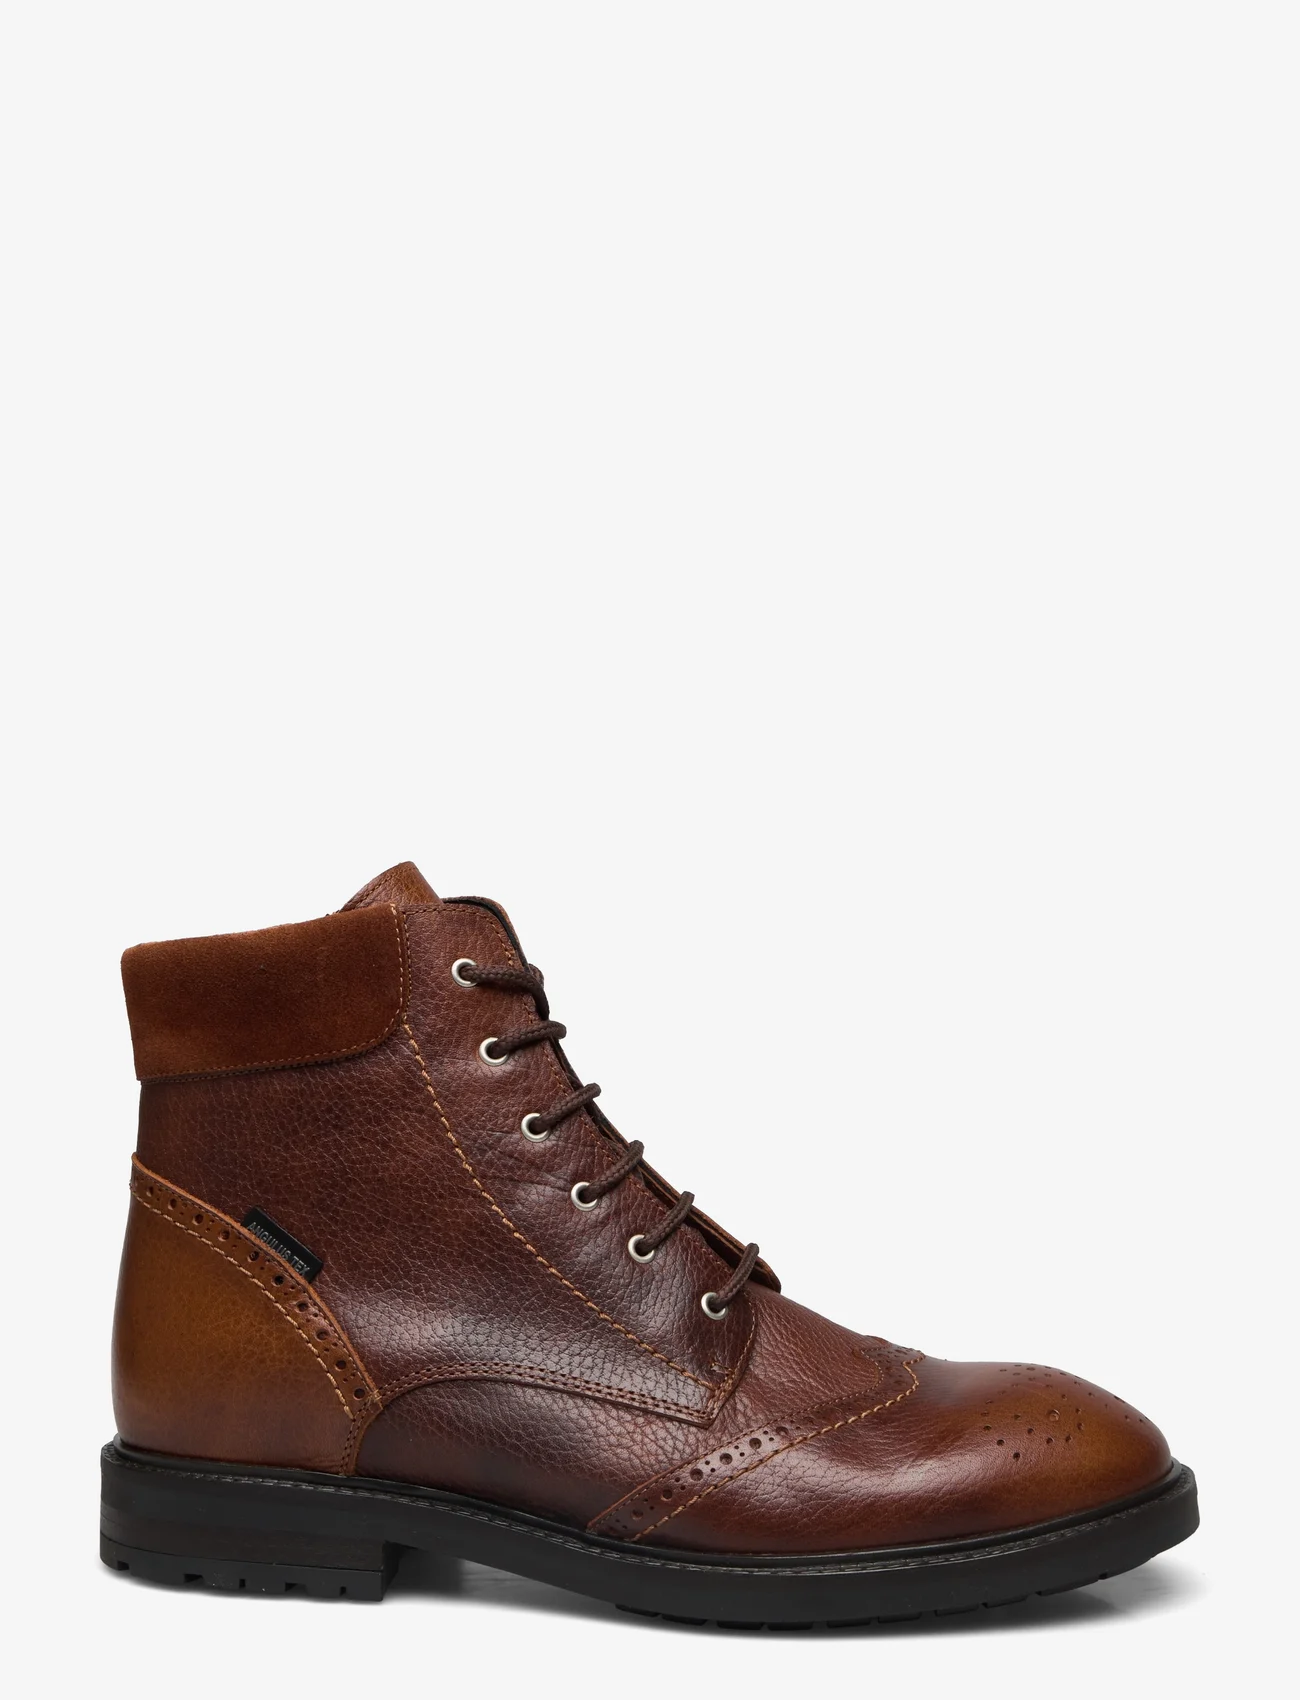 ANGULUS - Shoes - flat - with lace - Šņorējami - 2509/1166 medium brown/cognac - 1